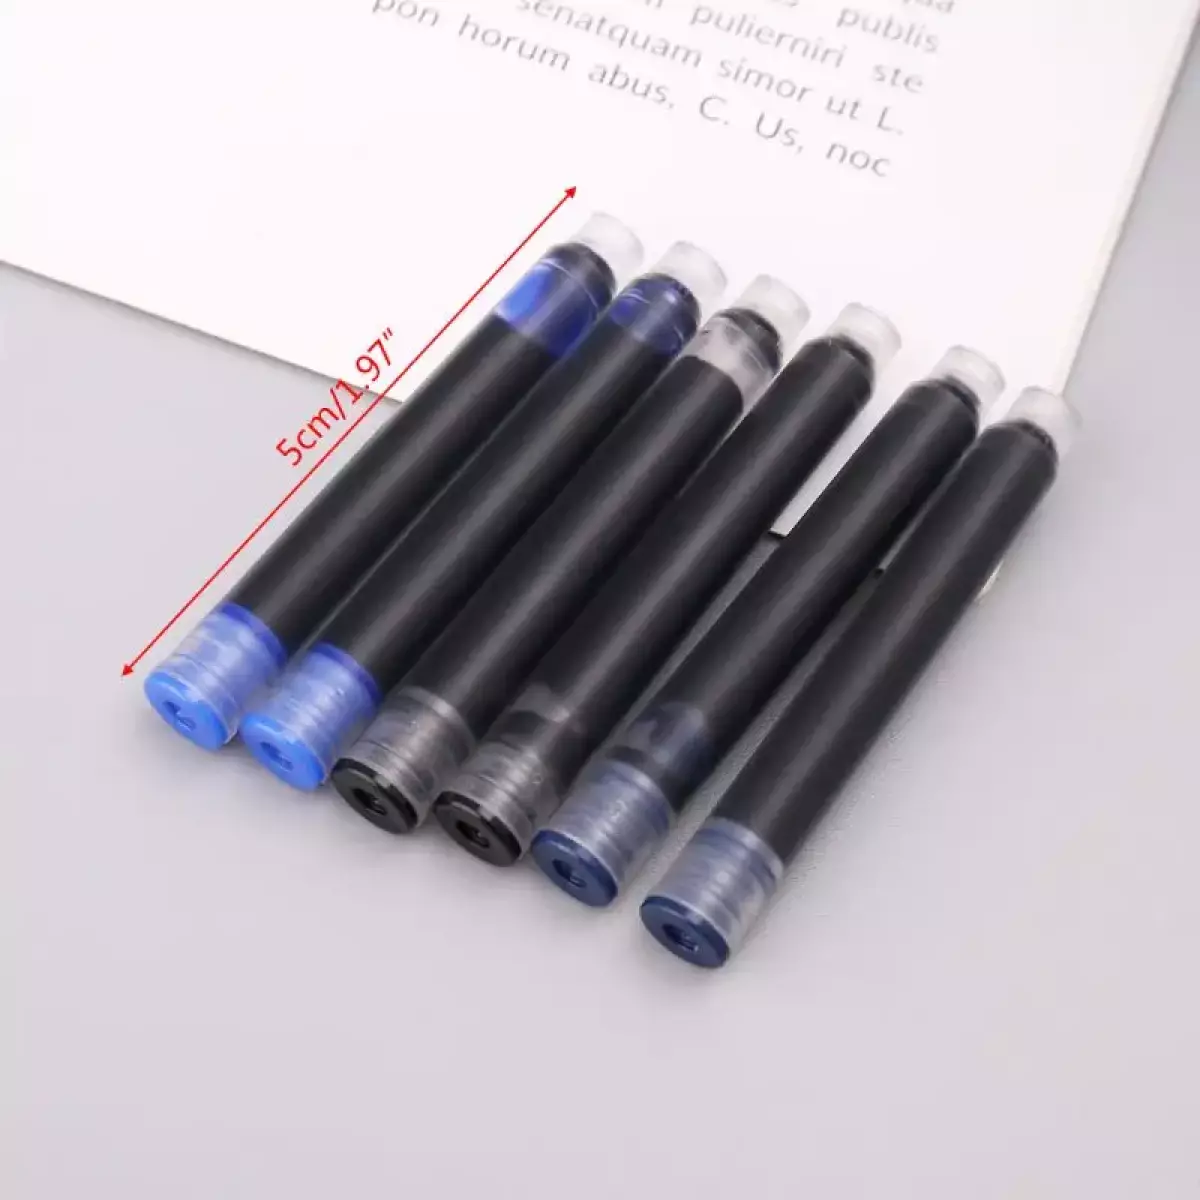 20 Rezerve mari cerneala albastra erasable in cutie